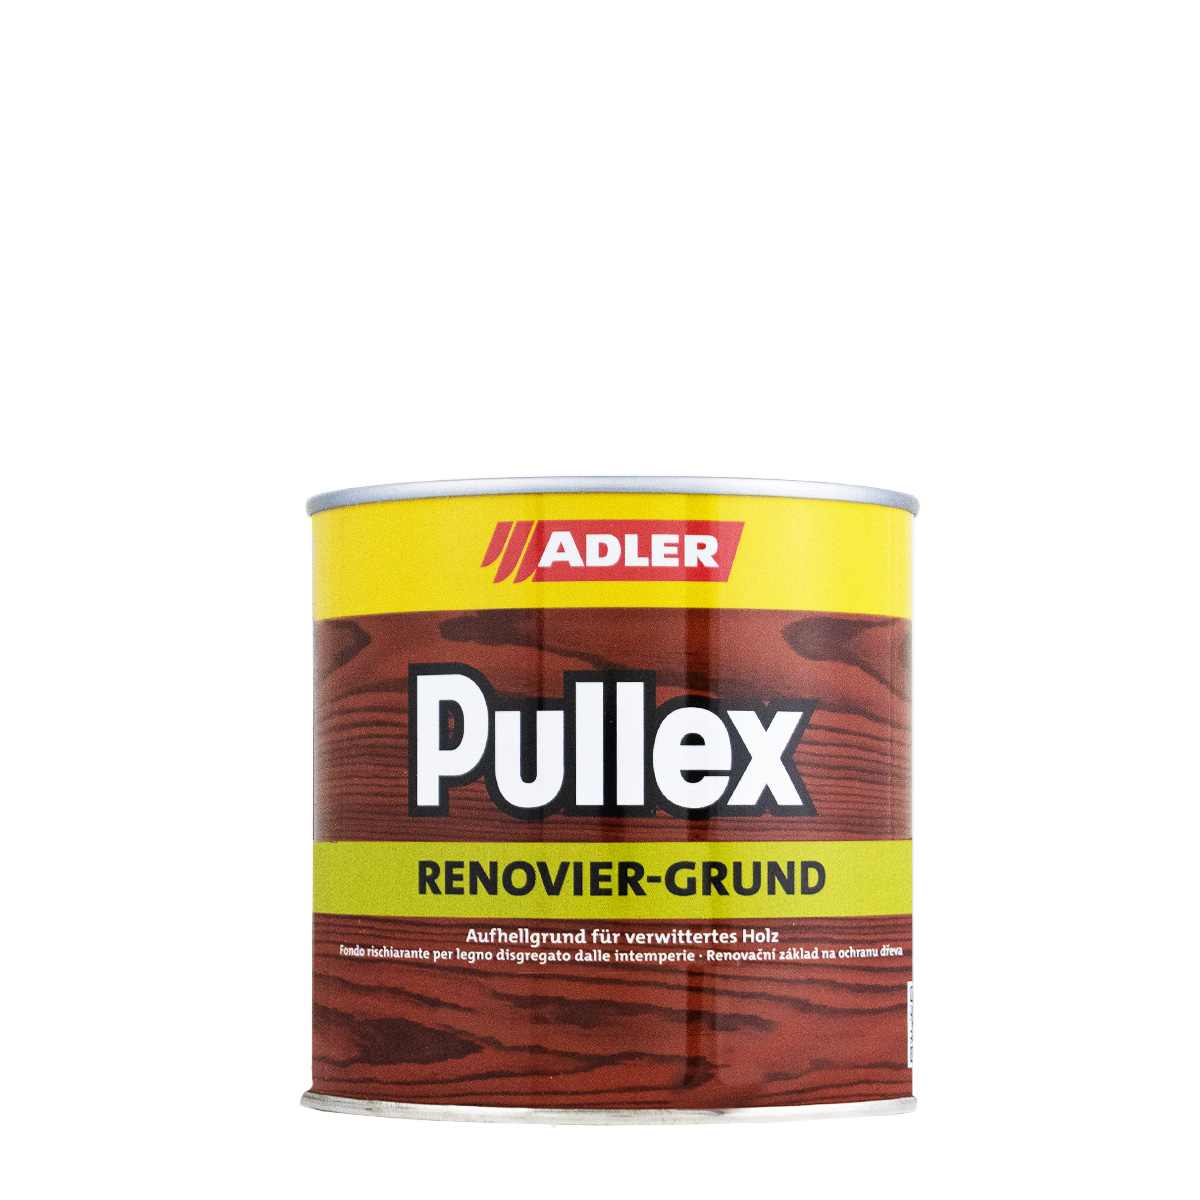 adler_pullex_renoviergrund_750ml_gross